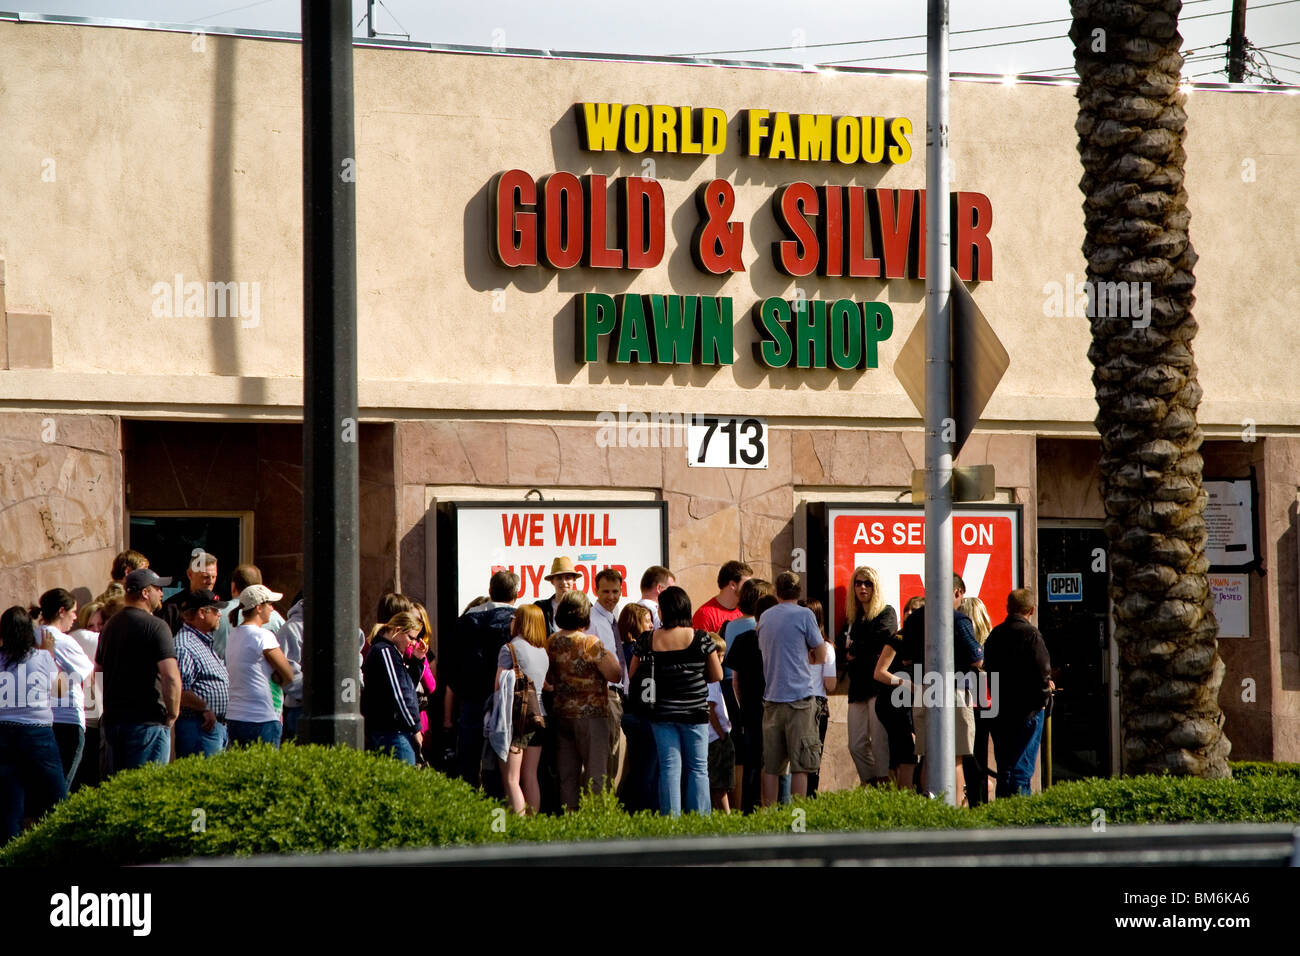 In der Hoffnung auf ein Wirklichkeit erscheinen-TV-show, bildet sich eine lange Schlange an einem Las Vegas, Nevada-Pfandhaus am Citys berühmten "Strip." Stockfoto